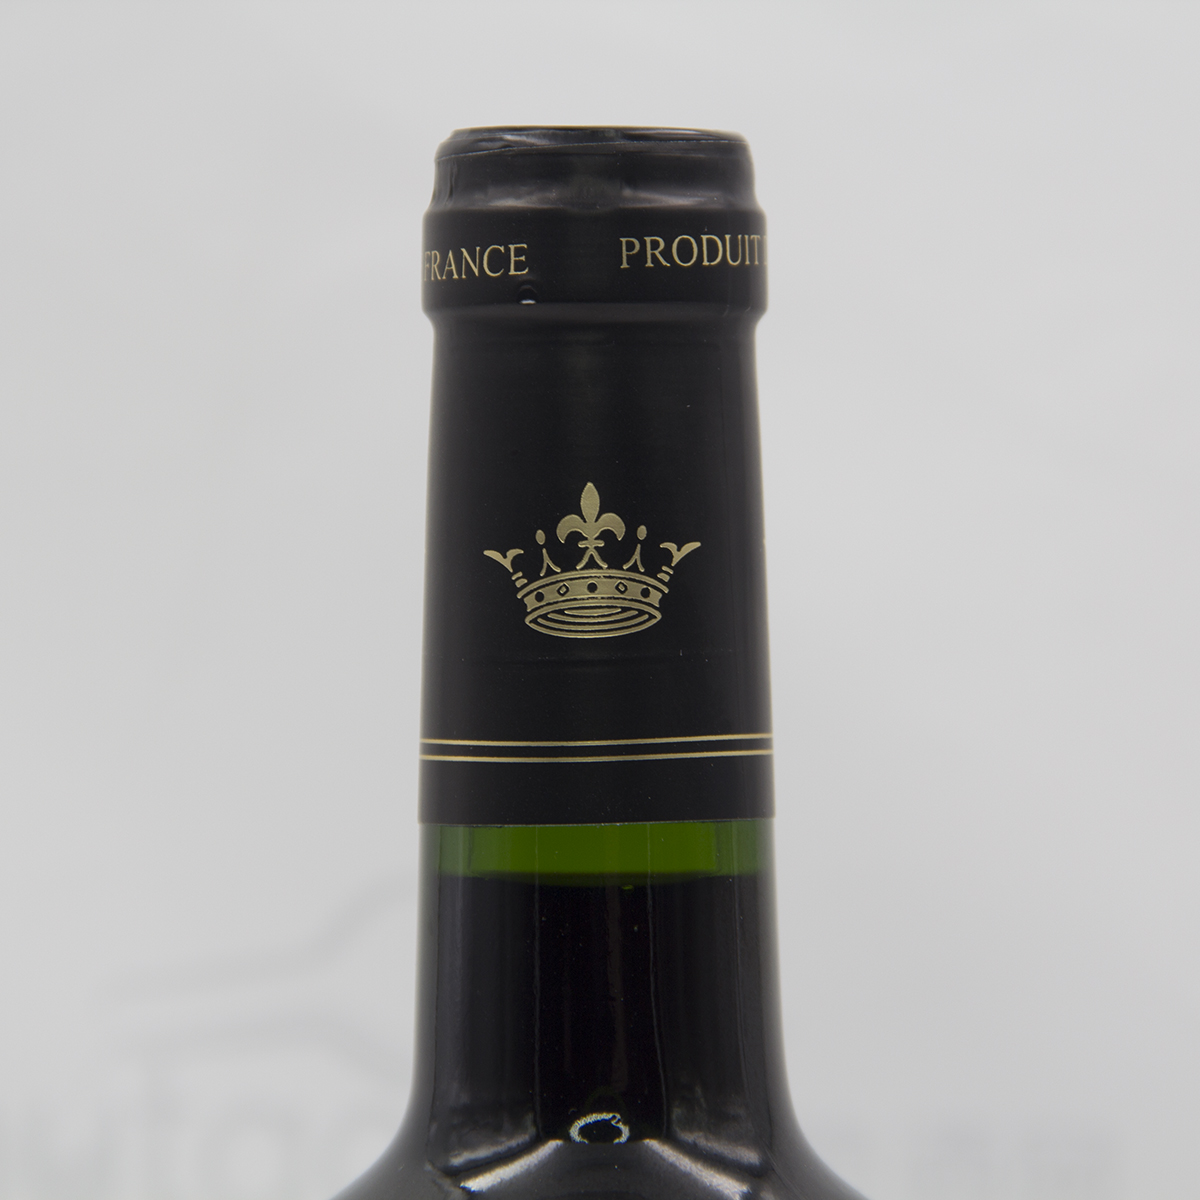  法国波尔多红葡萄园酒庄德威堡路易公爵赤霞珠梅洛AOC干红葡萄酒